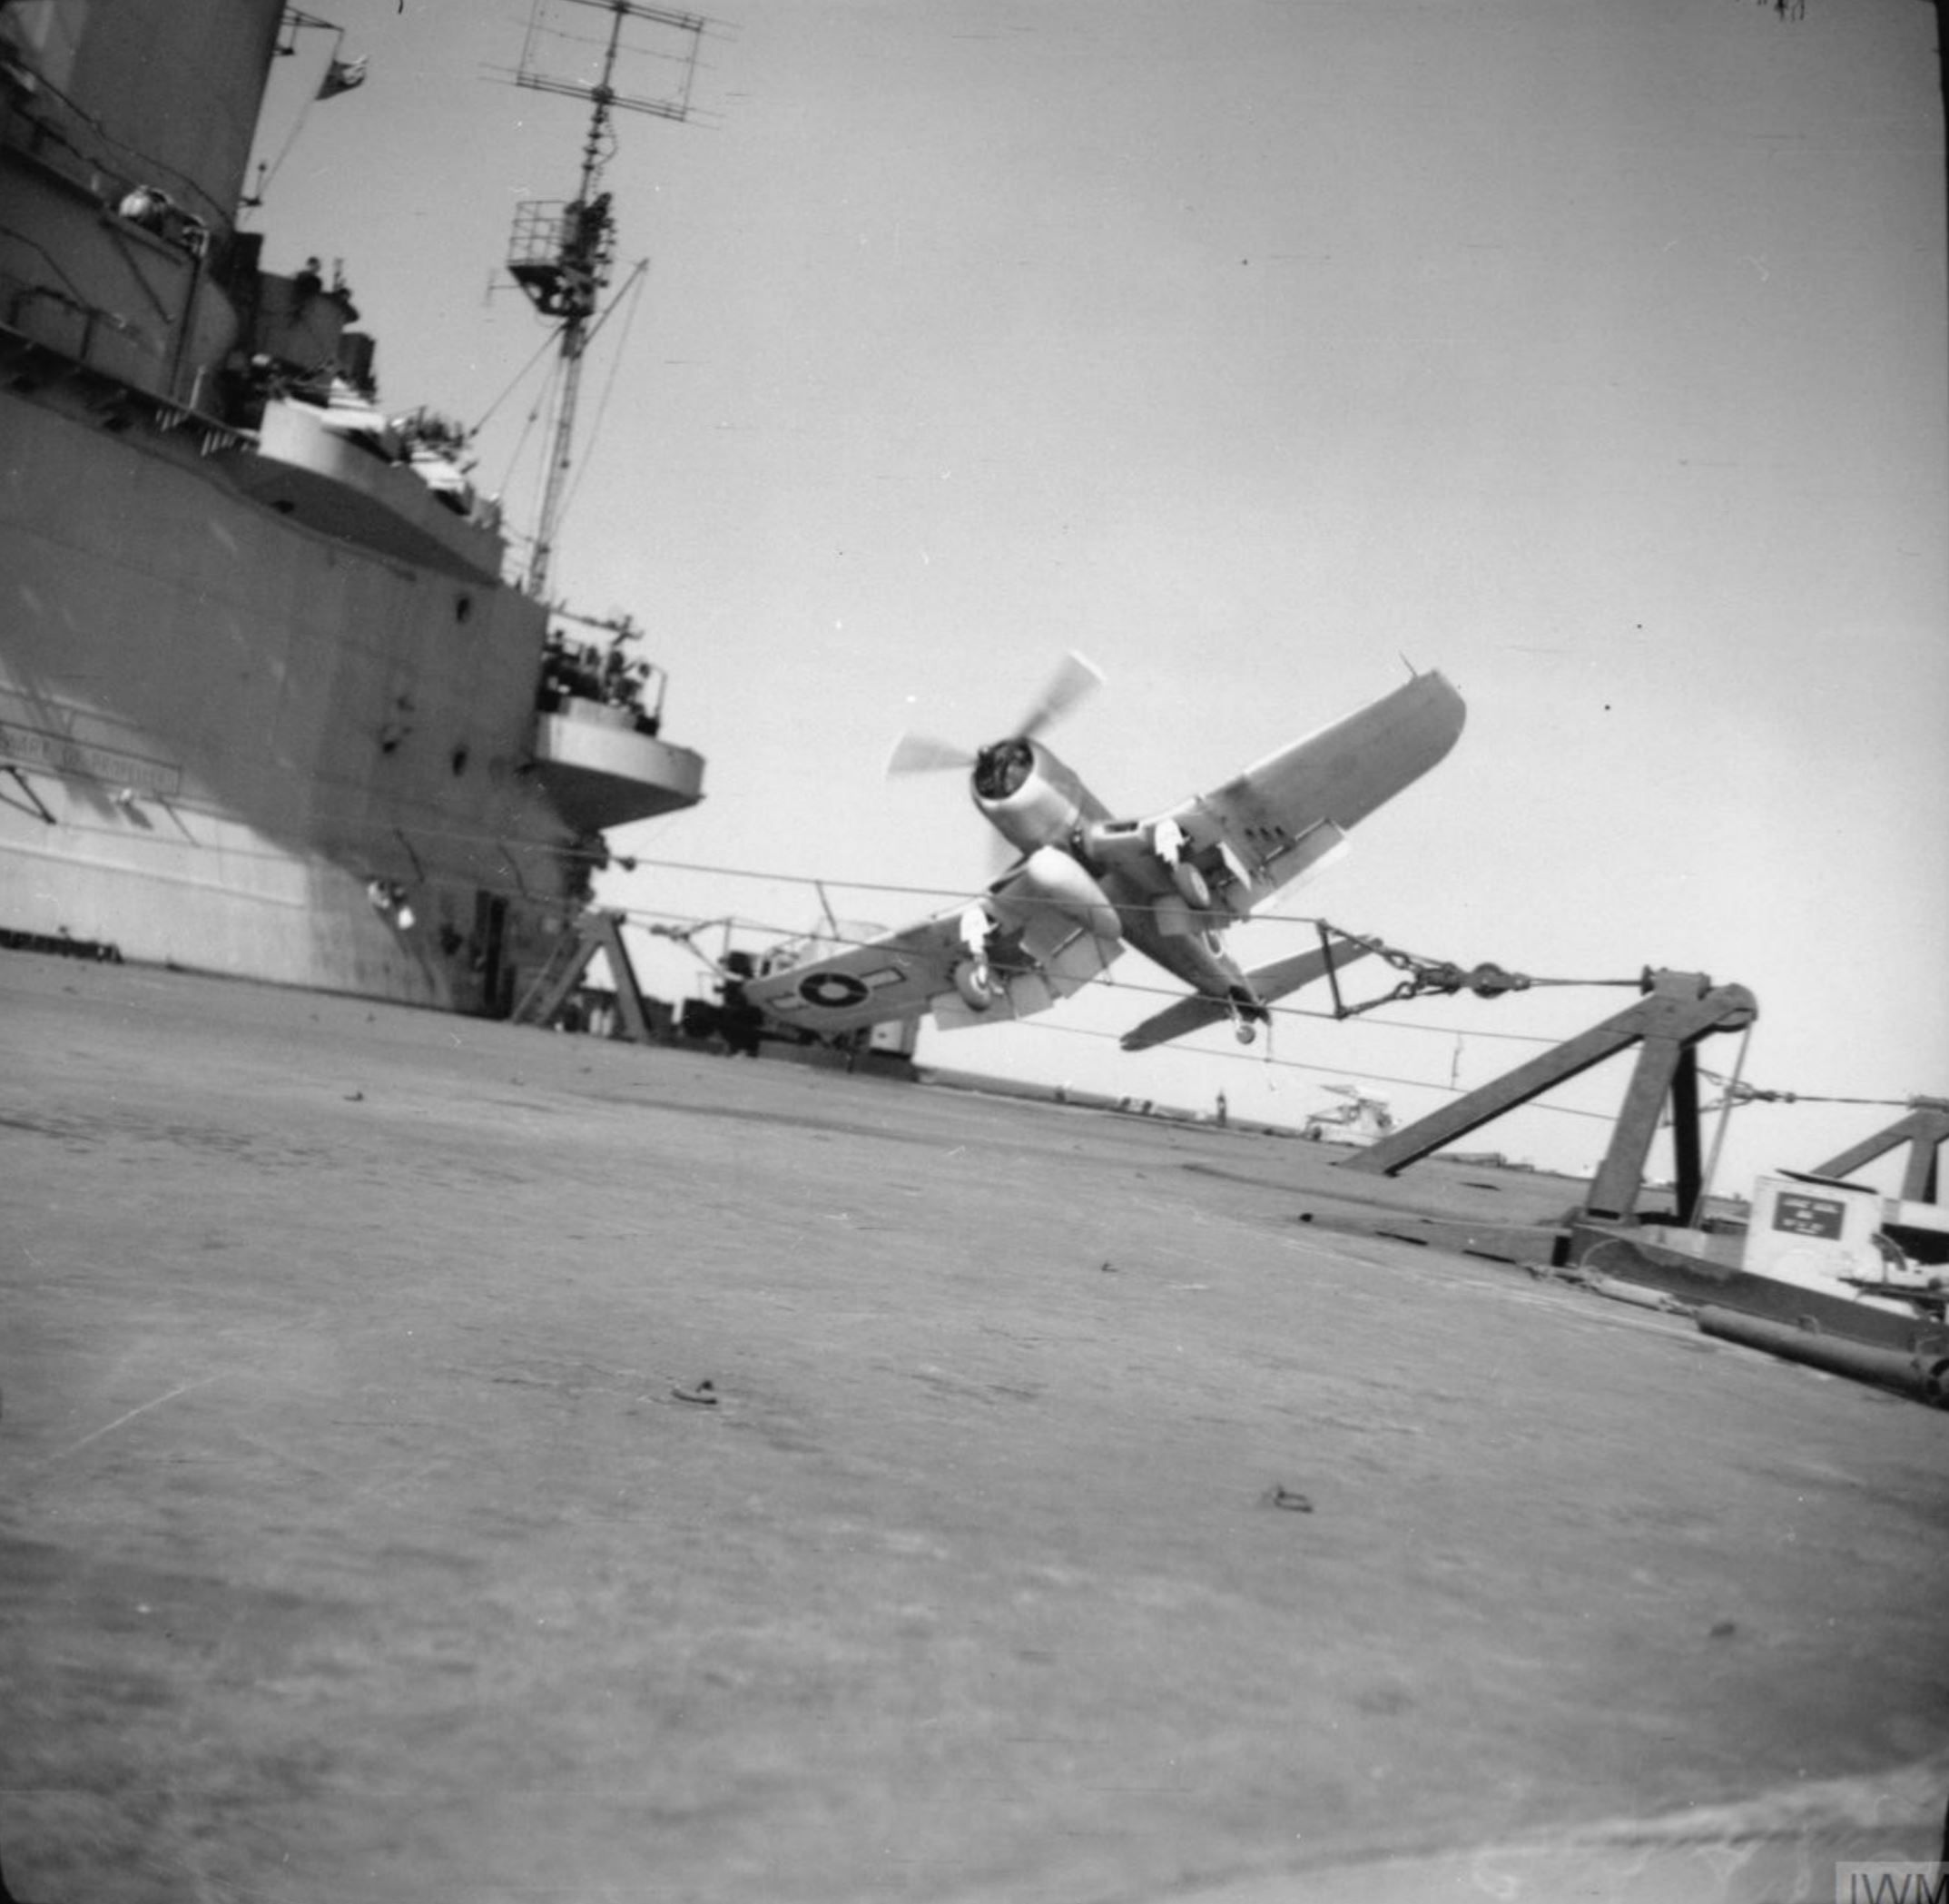 https://www.asisbiz.com/il2/Corsair/RN1830/images/Fleet-Air-Arm-1830NAS-Corsair-Q147-landing-mishap-aboard-HMS-Illustrious-13th-Apr-1945-IWM-A29271.jpg